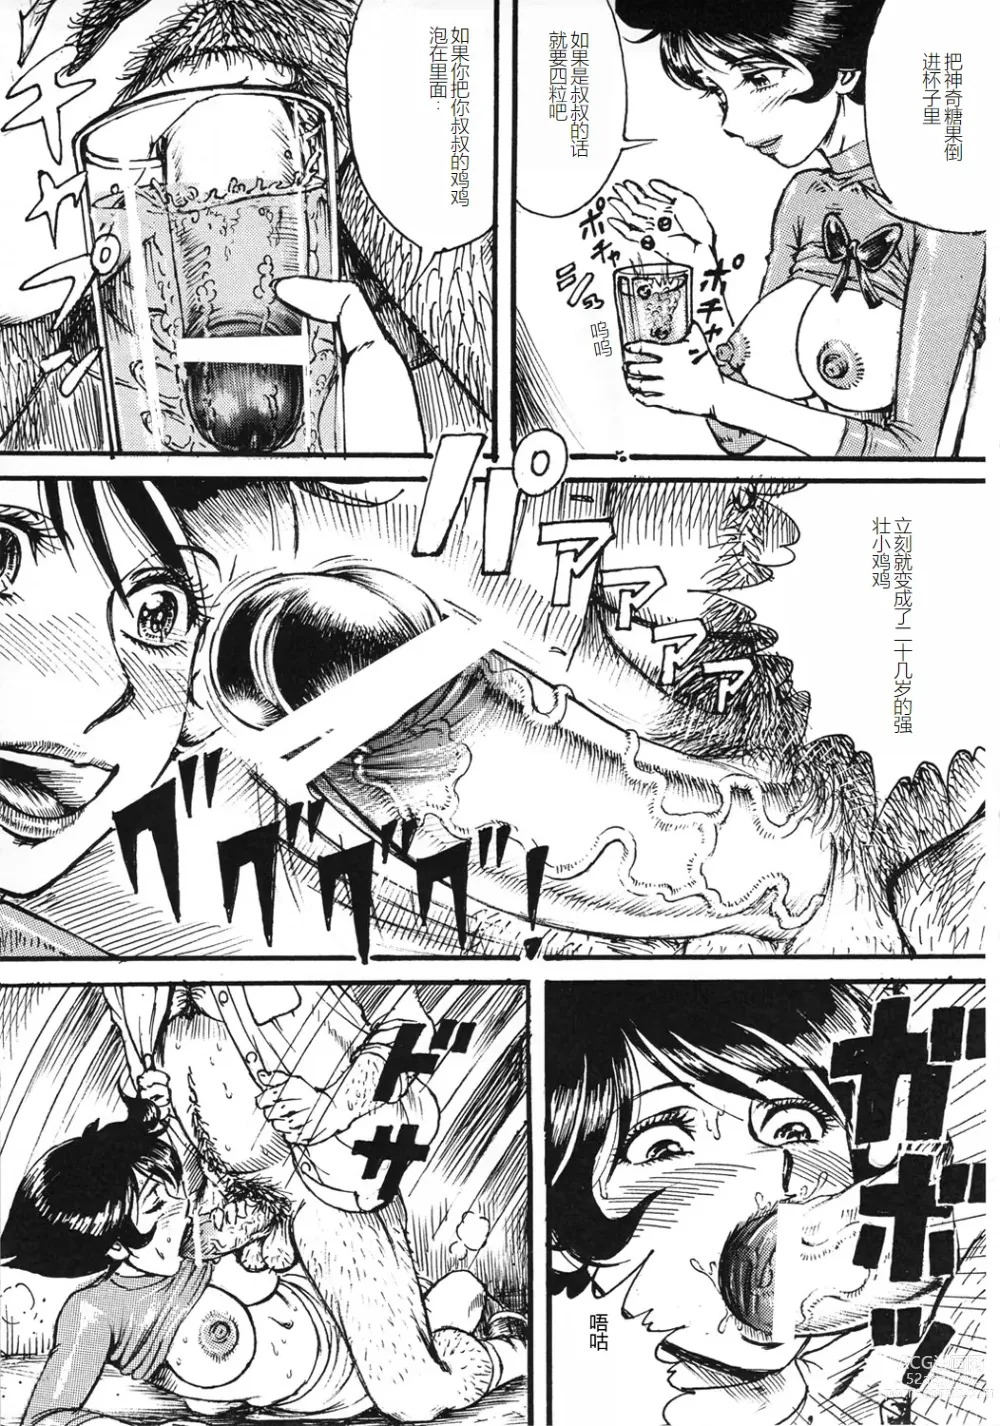 Page 6 of doujinshi Youjinbou Otaku Matsuri 8